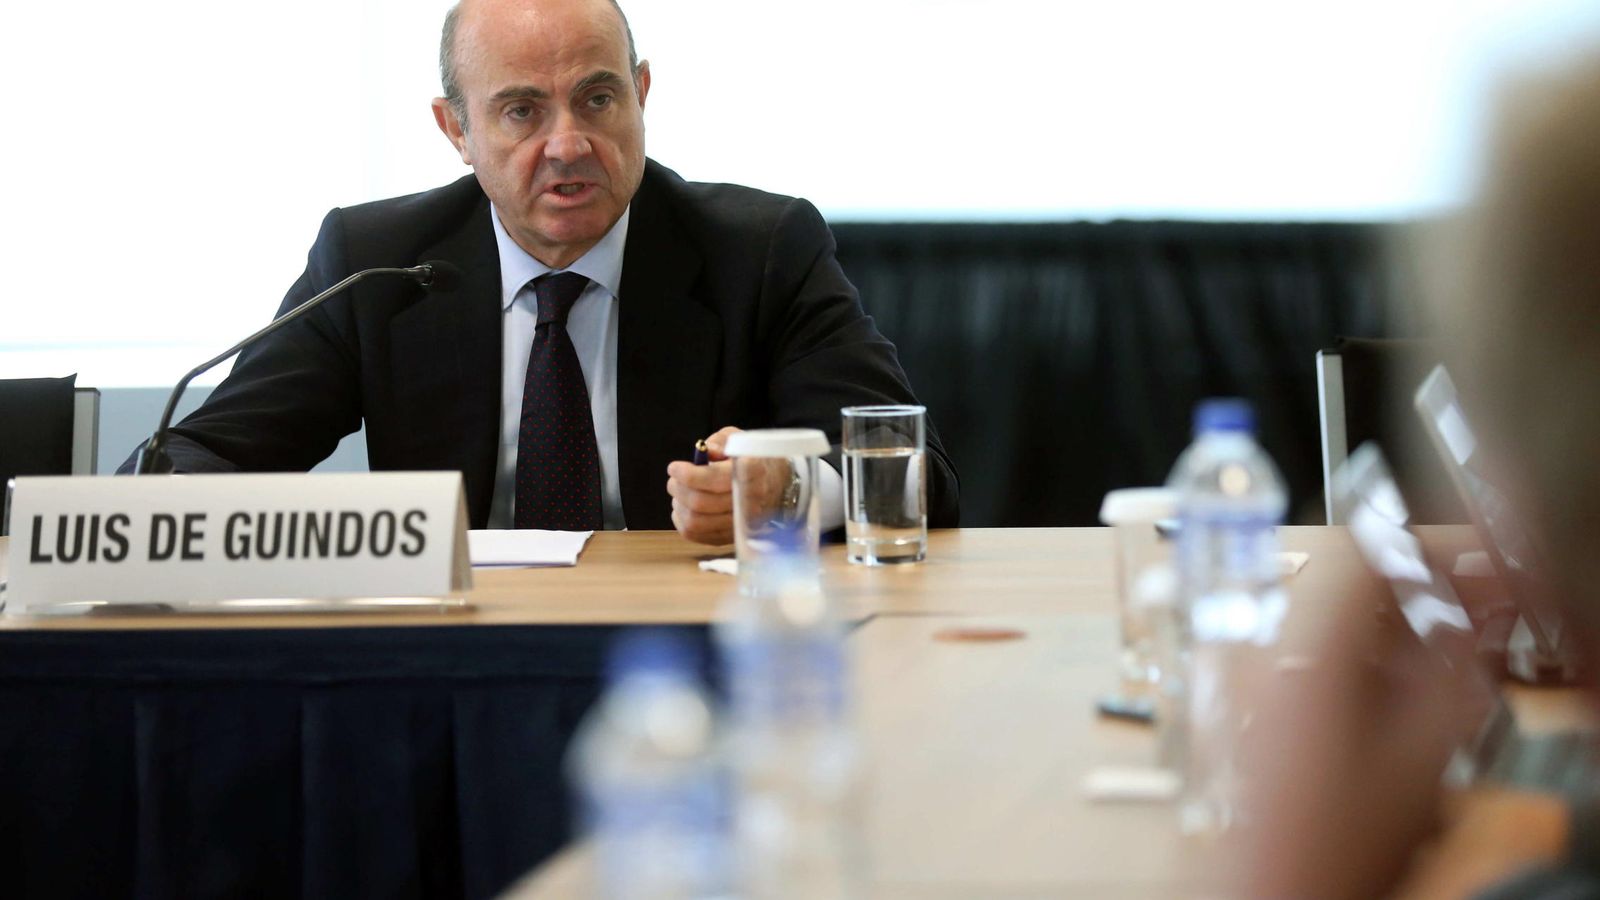 Foto: El ministro español de Economía y Competitividad, Luis de Guindos en una rueda de prensa en medio de las conclusiones de su participación en la Asamblea Anual del Fondo Monetario Internacional (FMI) y el Banco Mundial (BM). (EFE)